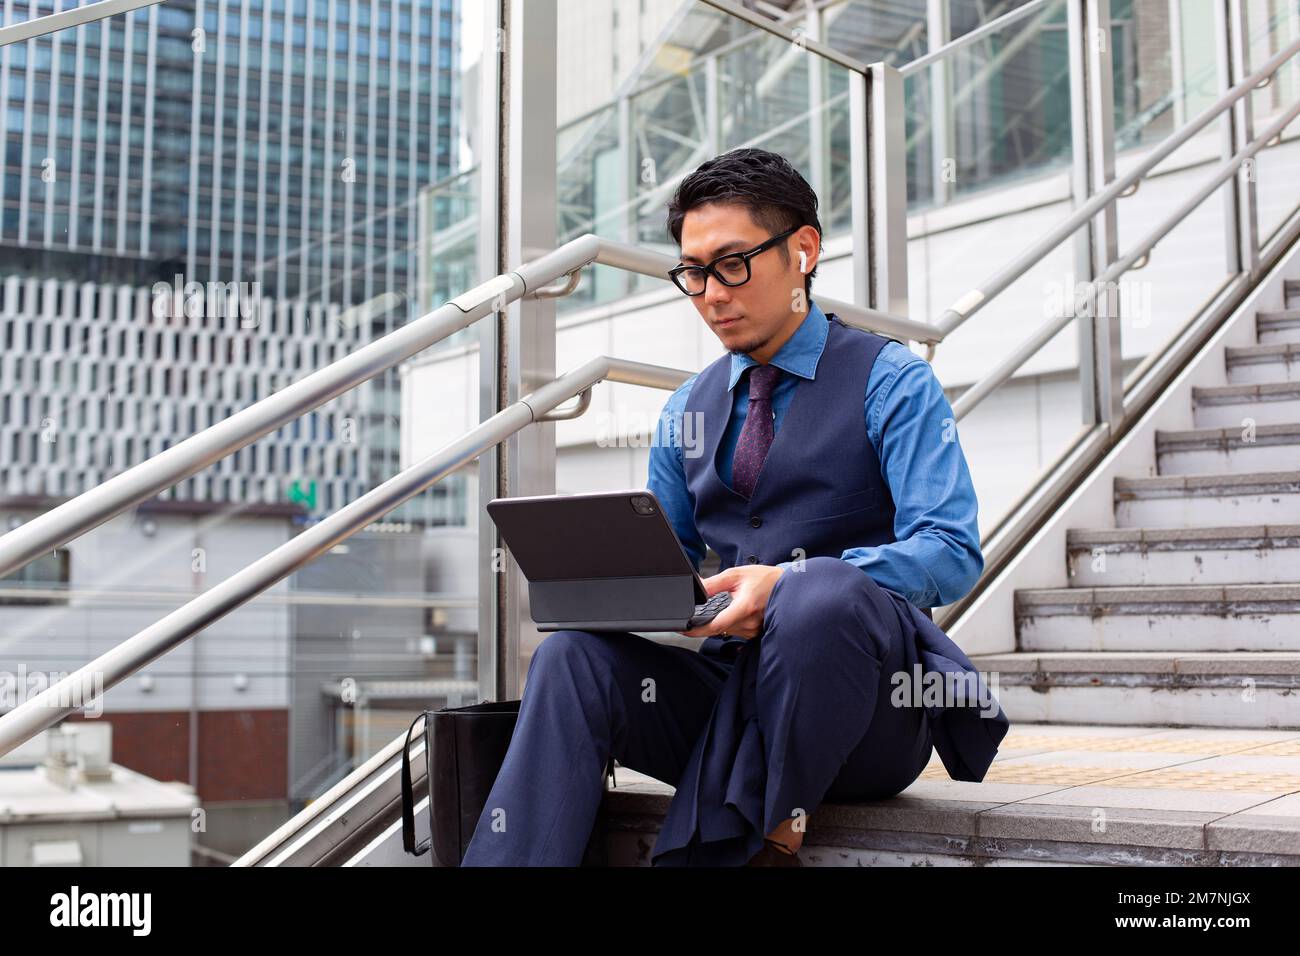 Ein junger Geschäftsmann in der Stadt, der unterwegs ist, auf der Treppe am Fenster sitzt und einen Laptop benutzt. Stockfoto